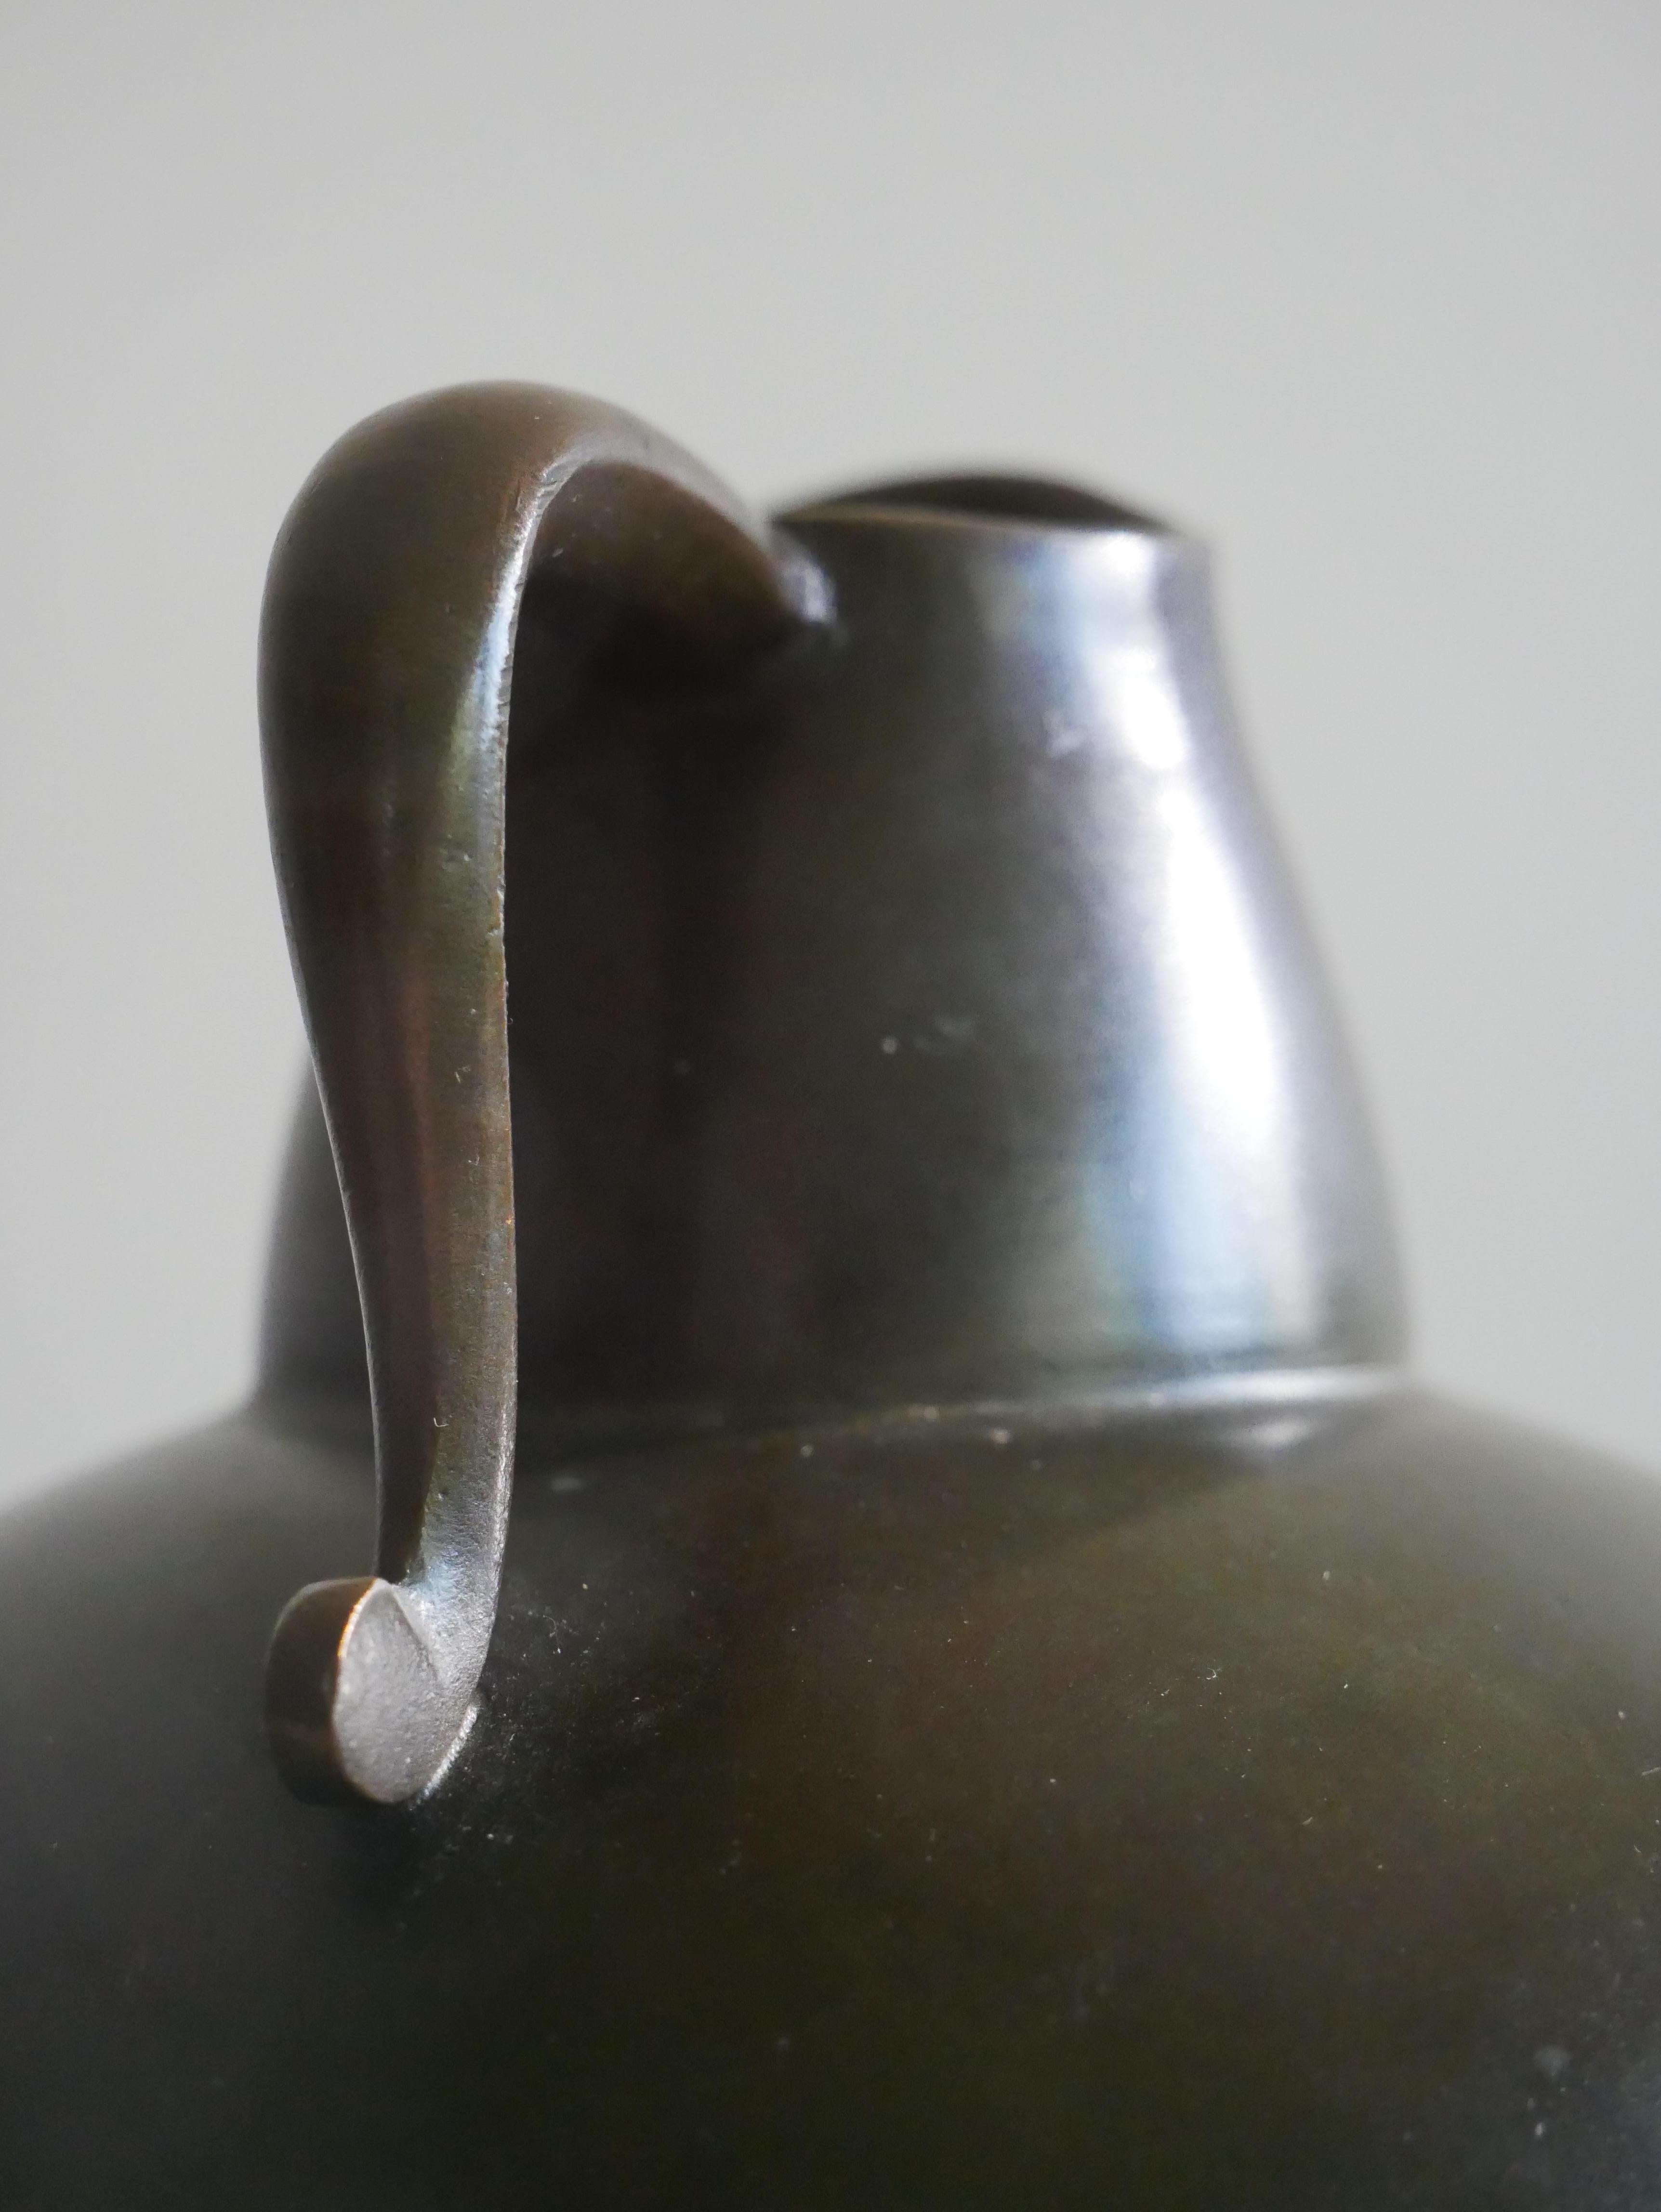 Vase, entworfen und hergestellt von GAB, Guldsmedsaktiebolaget, Schweden, 1930er Jahre. 
Gestempelt mit Herstellerzeichen. 
Hergestellt aus Bronzeguss.